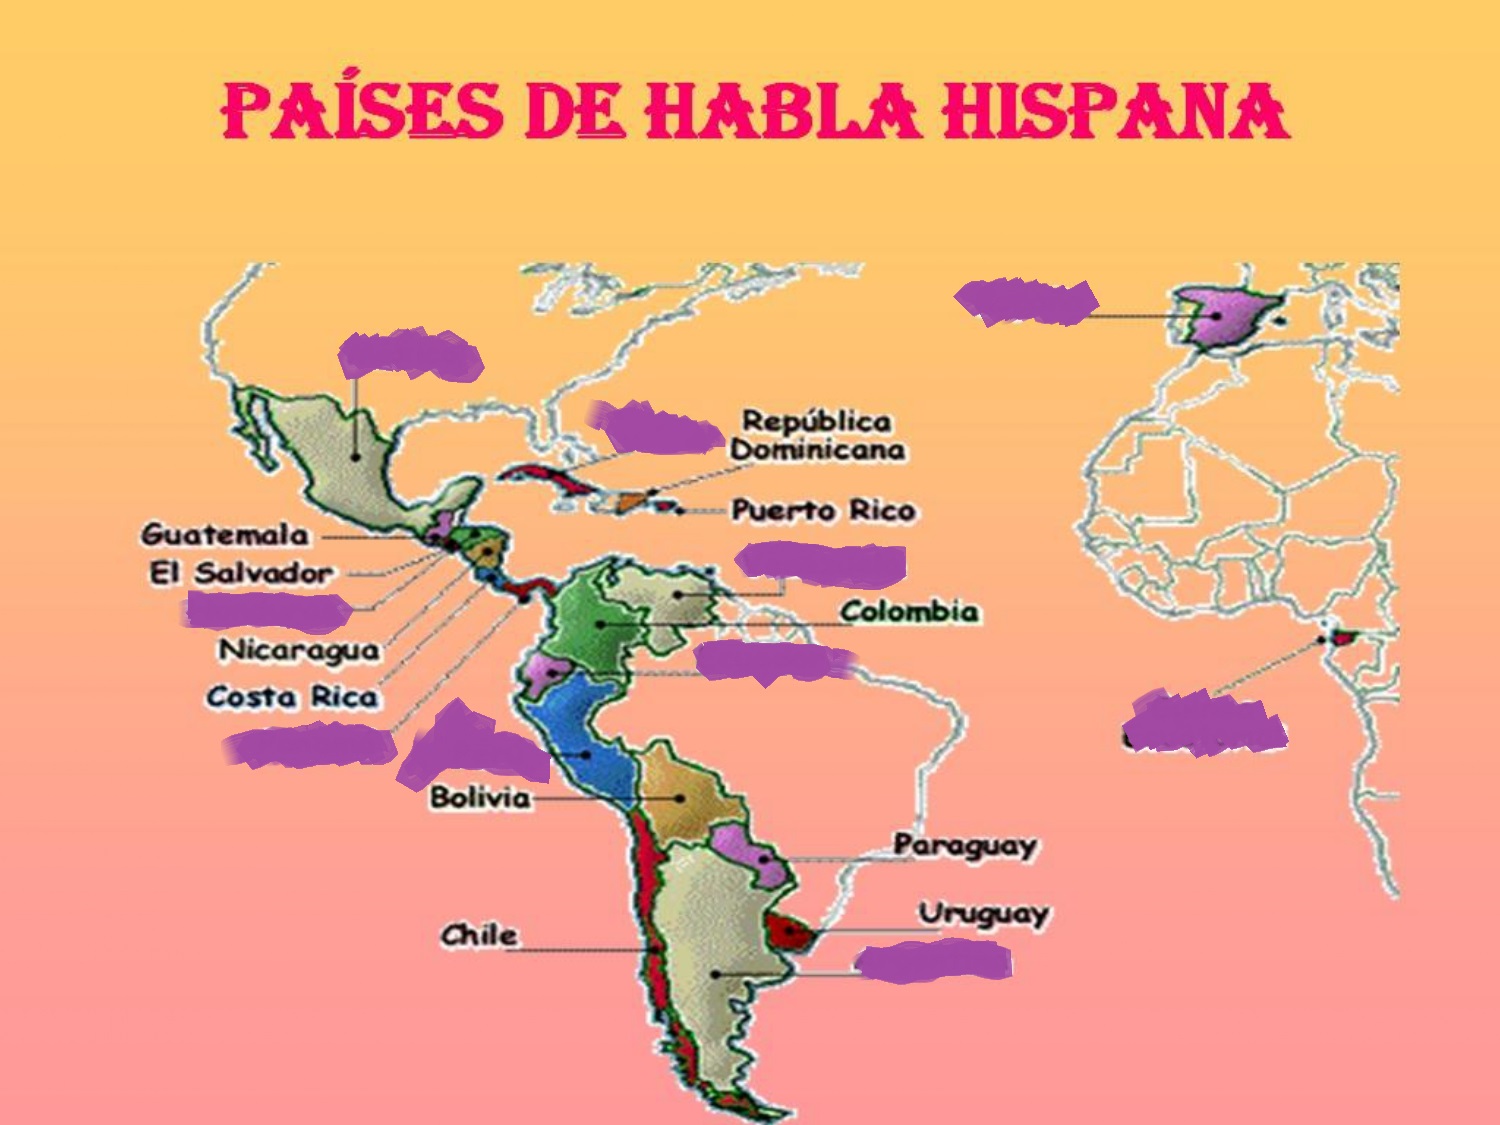 Juegos de Geografía | Juego de Los países de habla hispana | Cerebriti